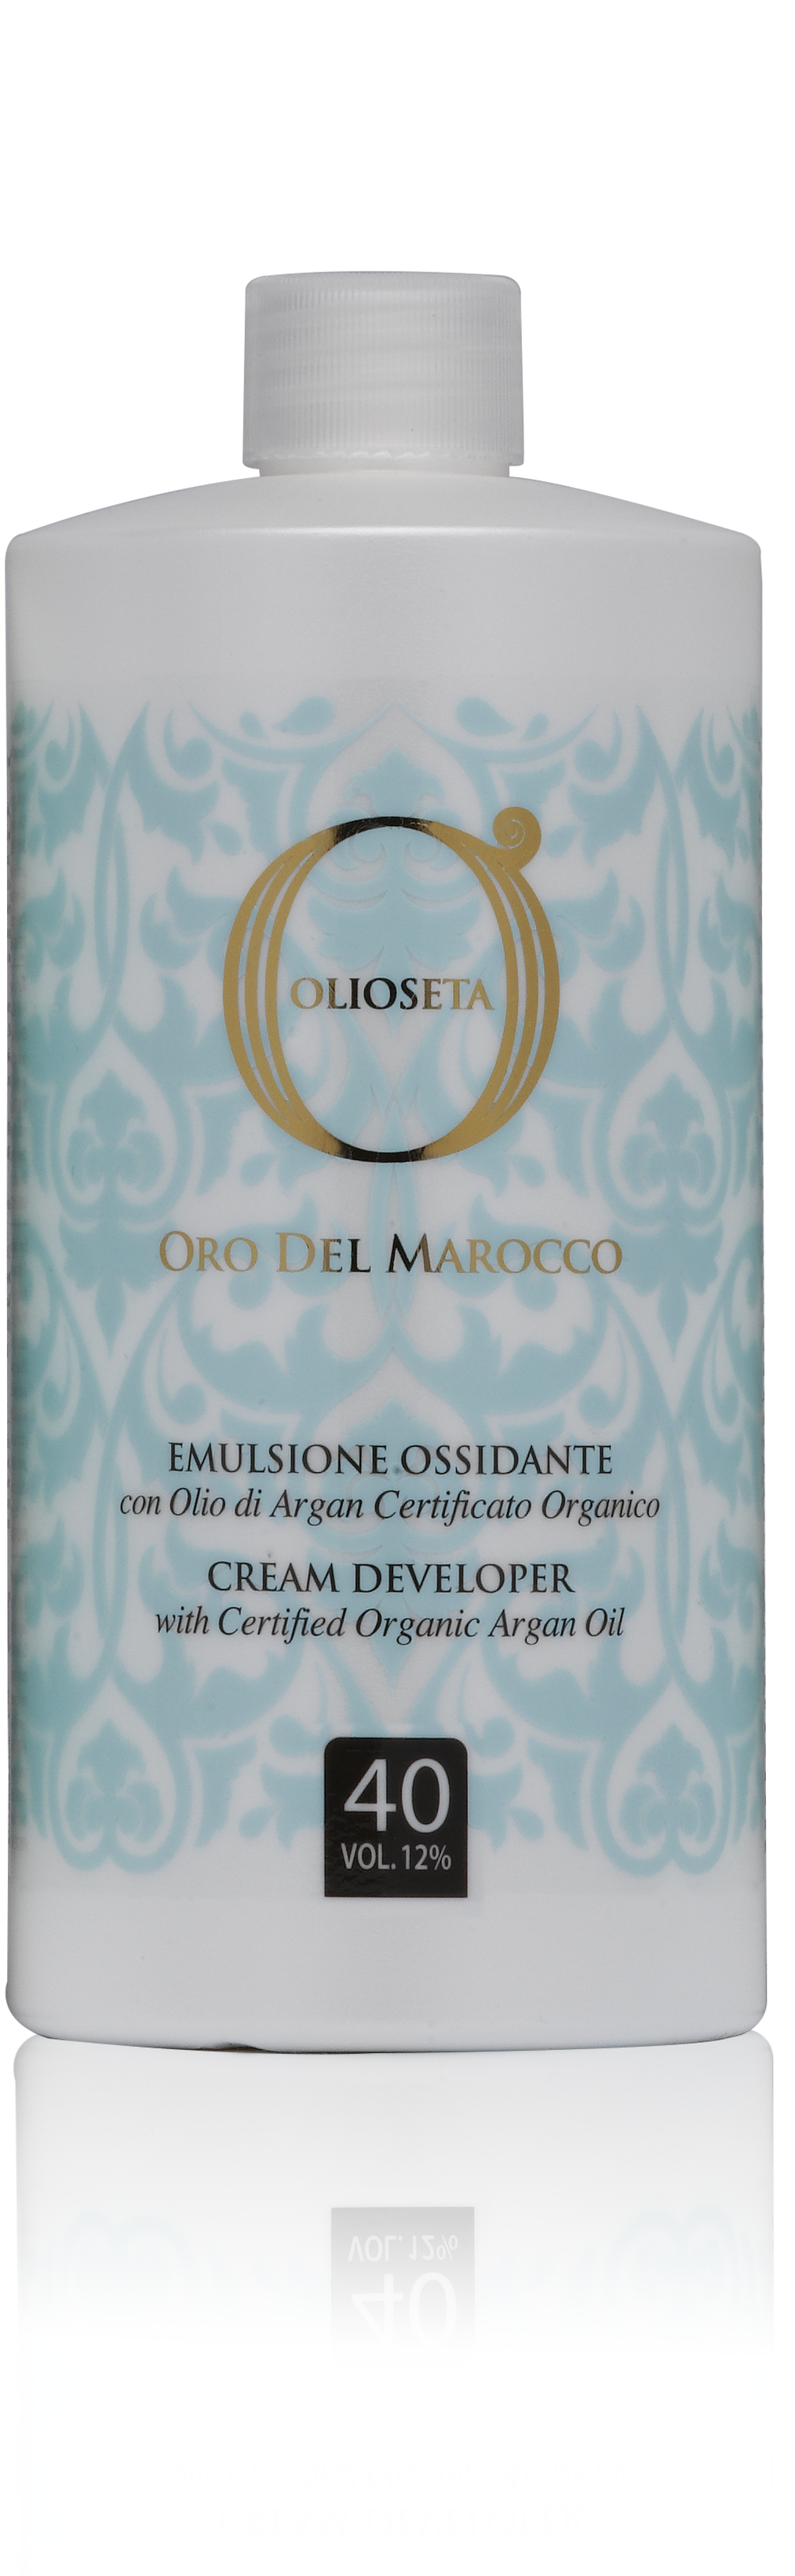 Barex olioseta oro del marocco эмульсионный оксигент с аргановым маслом 12% 750мл